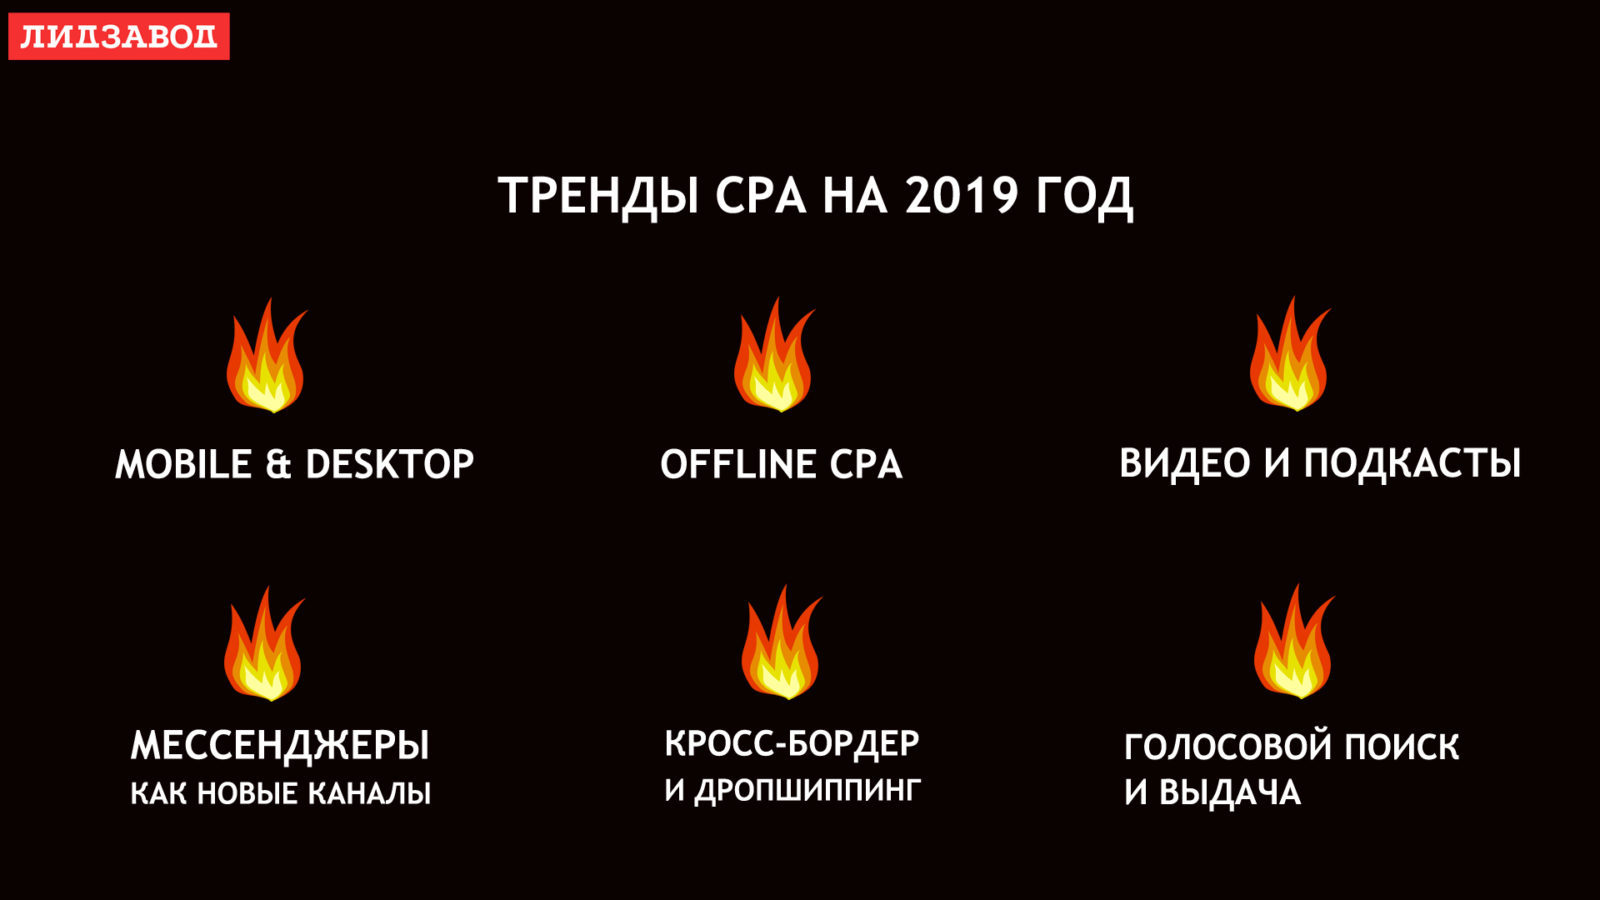 Тренды СРА 2019